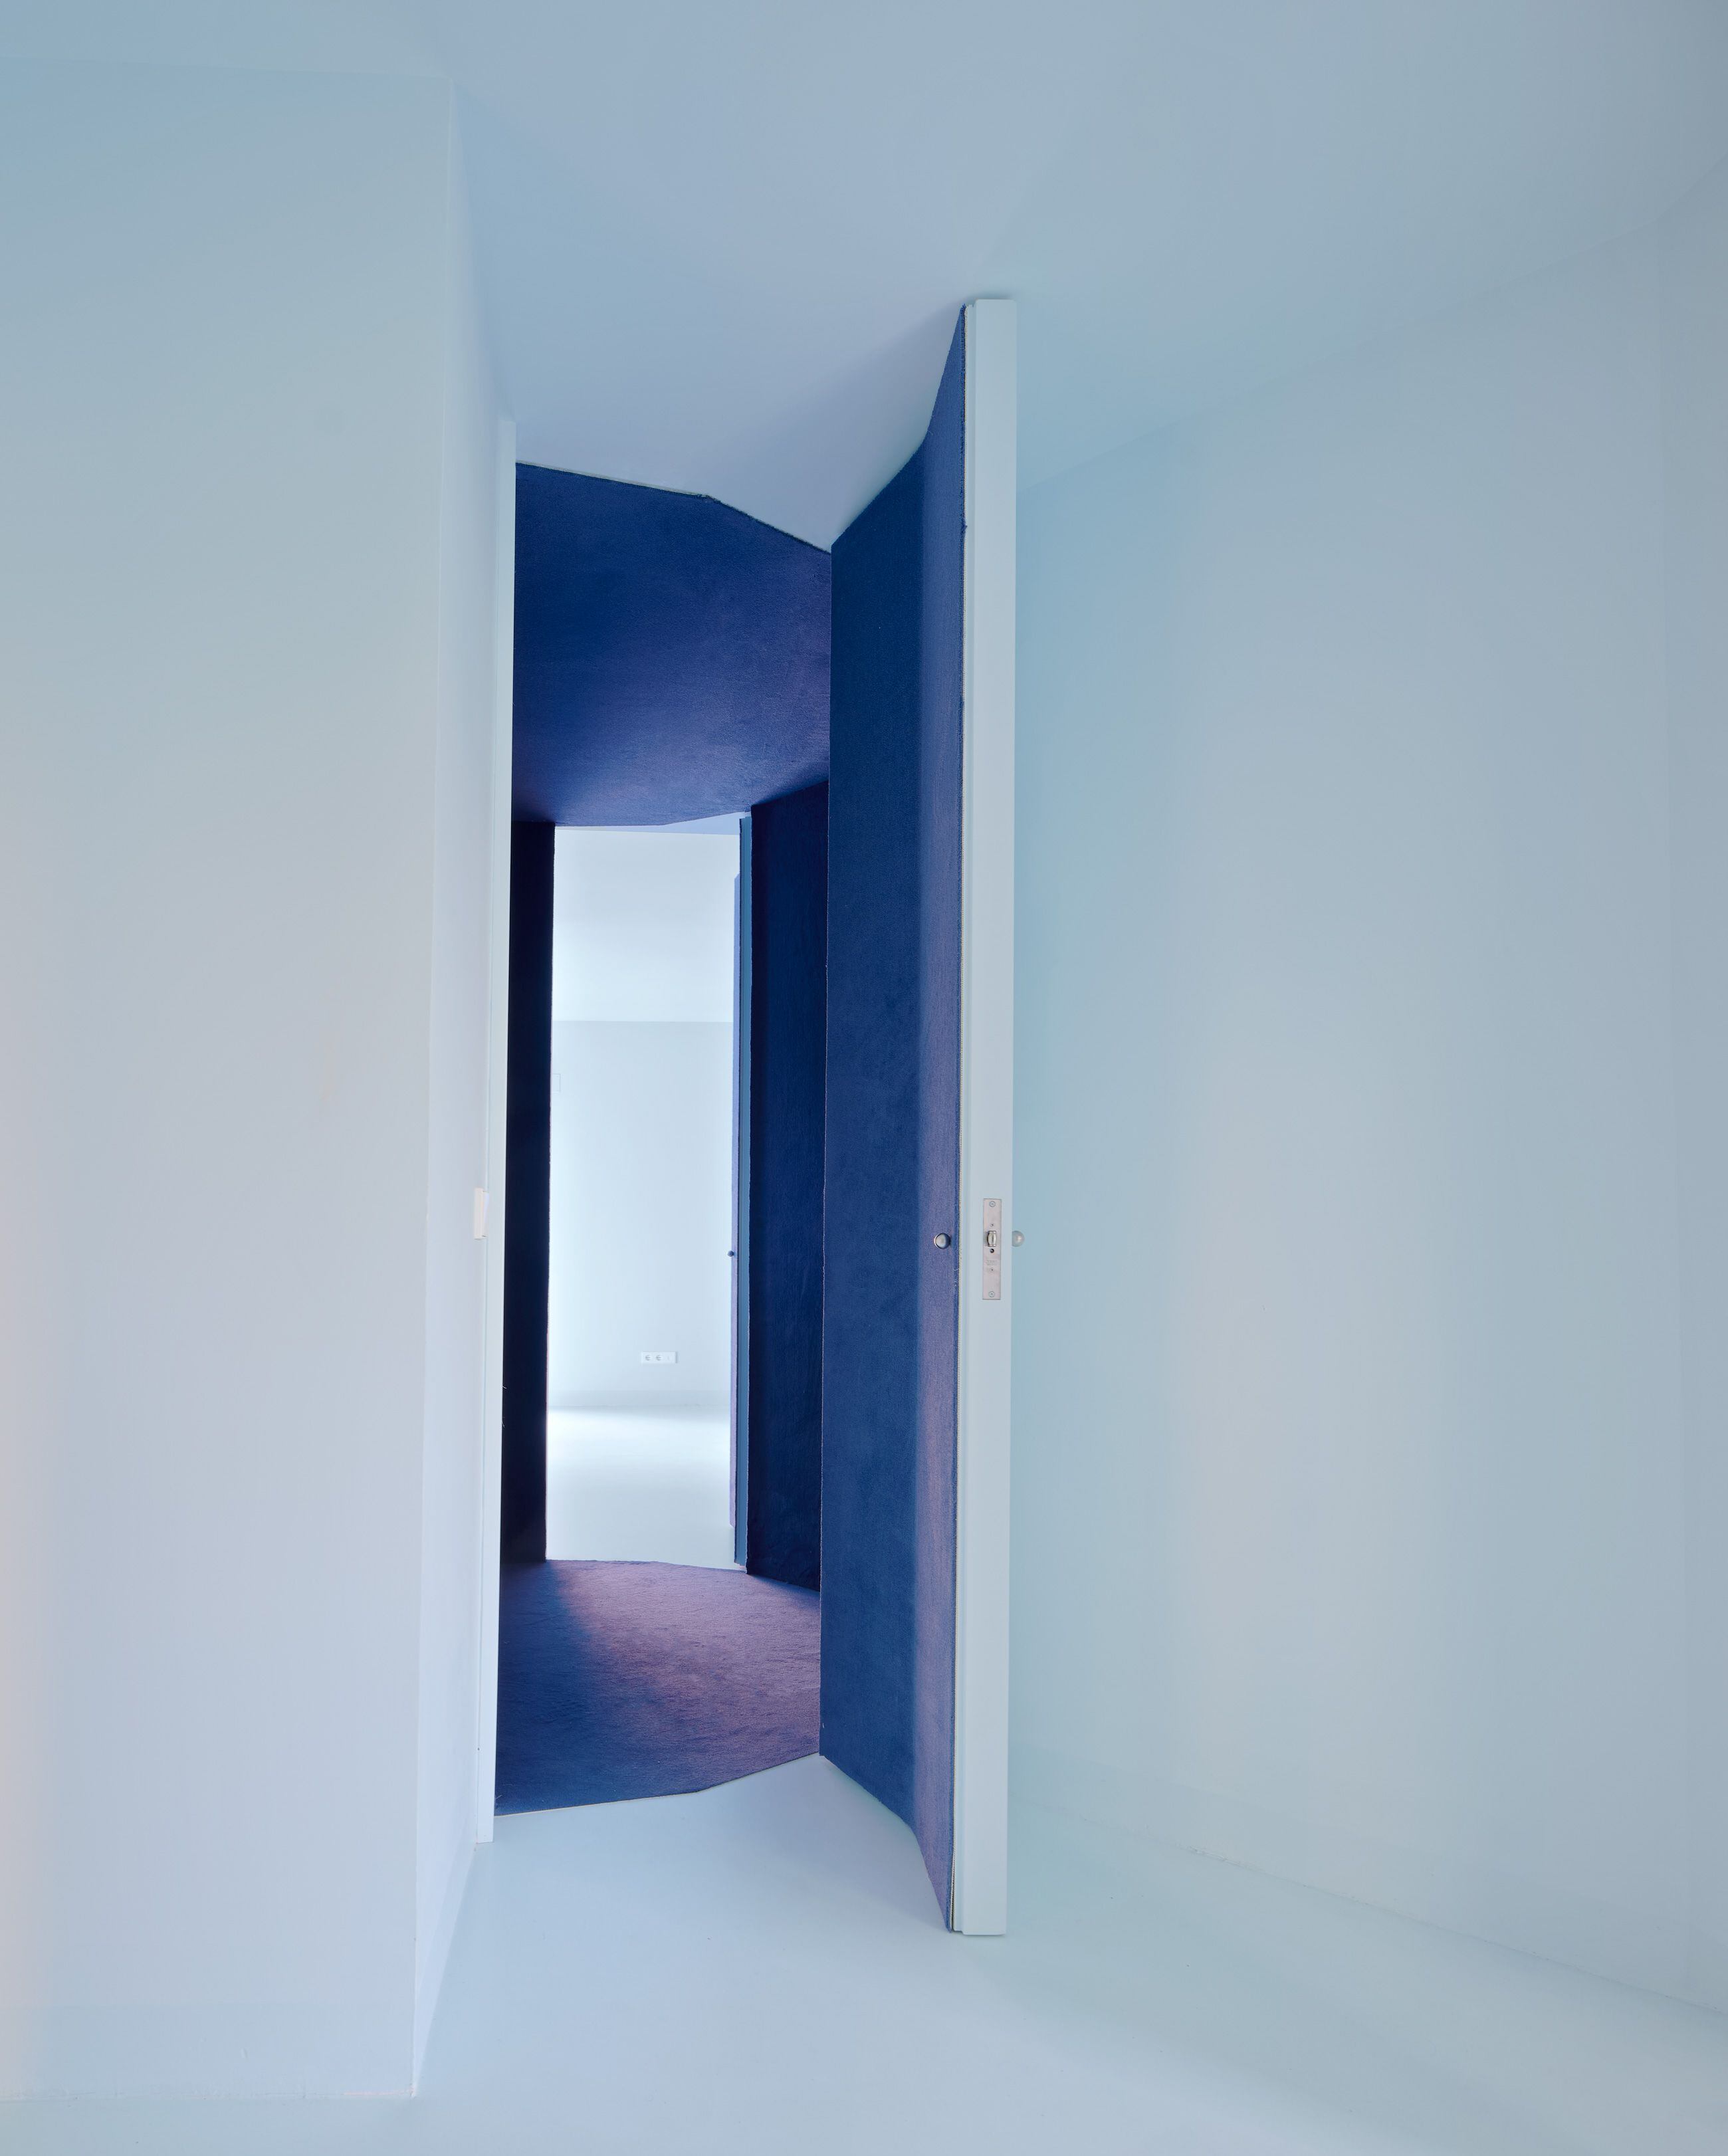 La puerta del pasillo lynchiano invita al cambio de ambiente y de colores en la Casa Barra